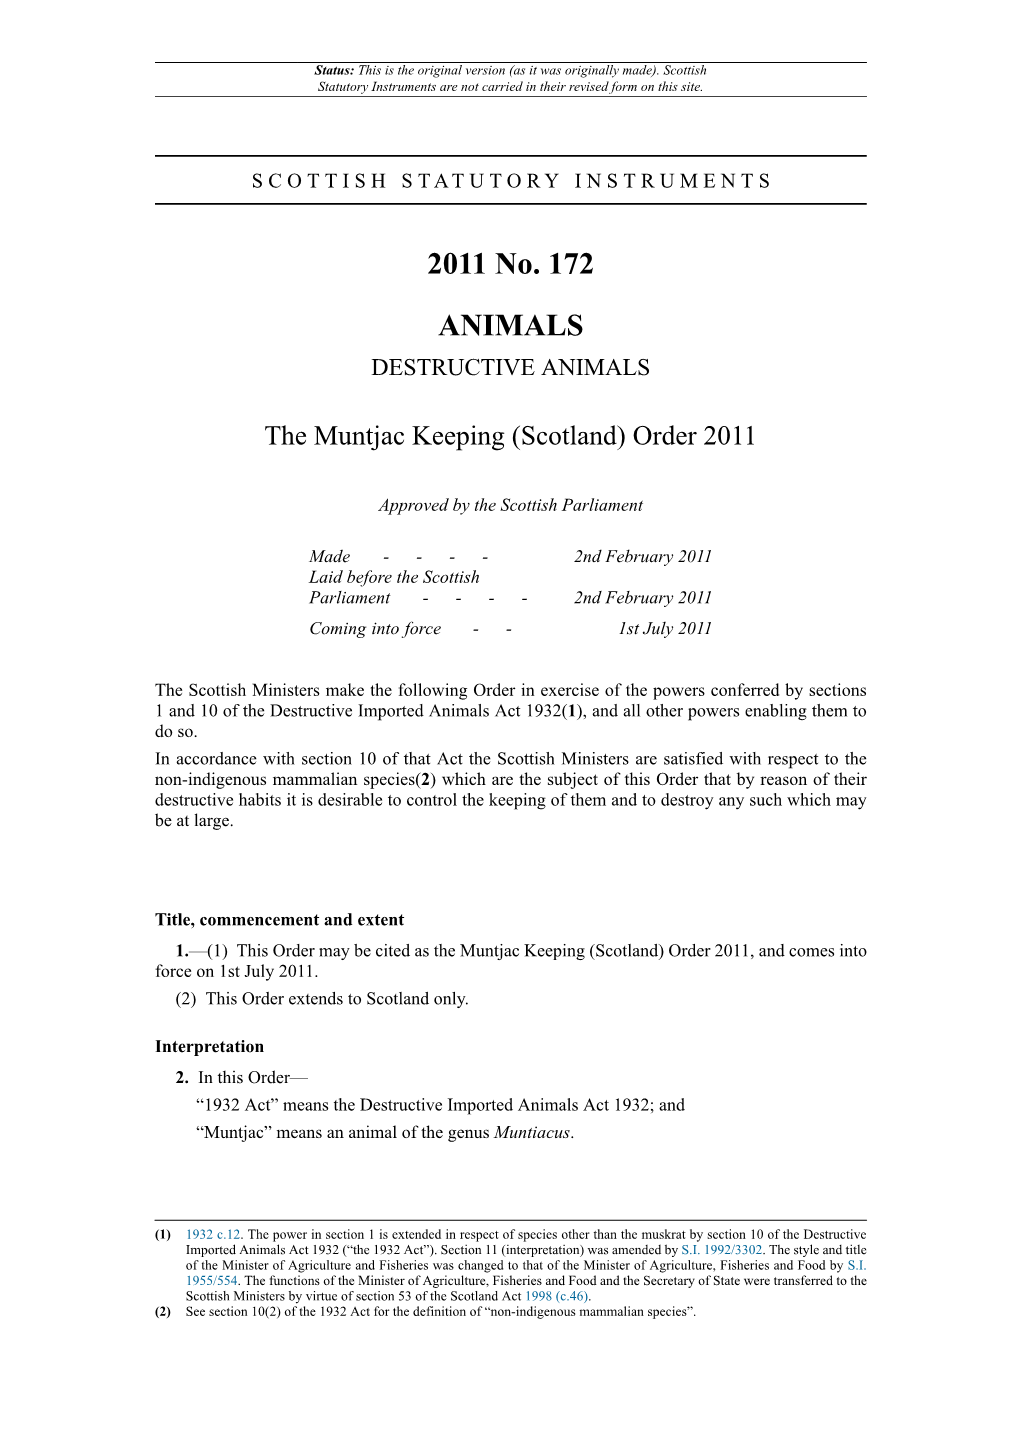 Muntjac Keeping (Scotland) Order 2011